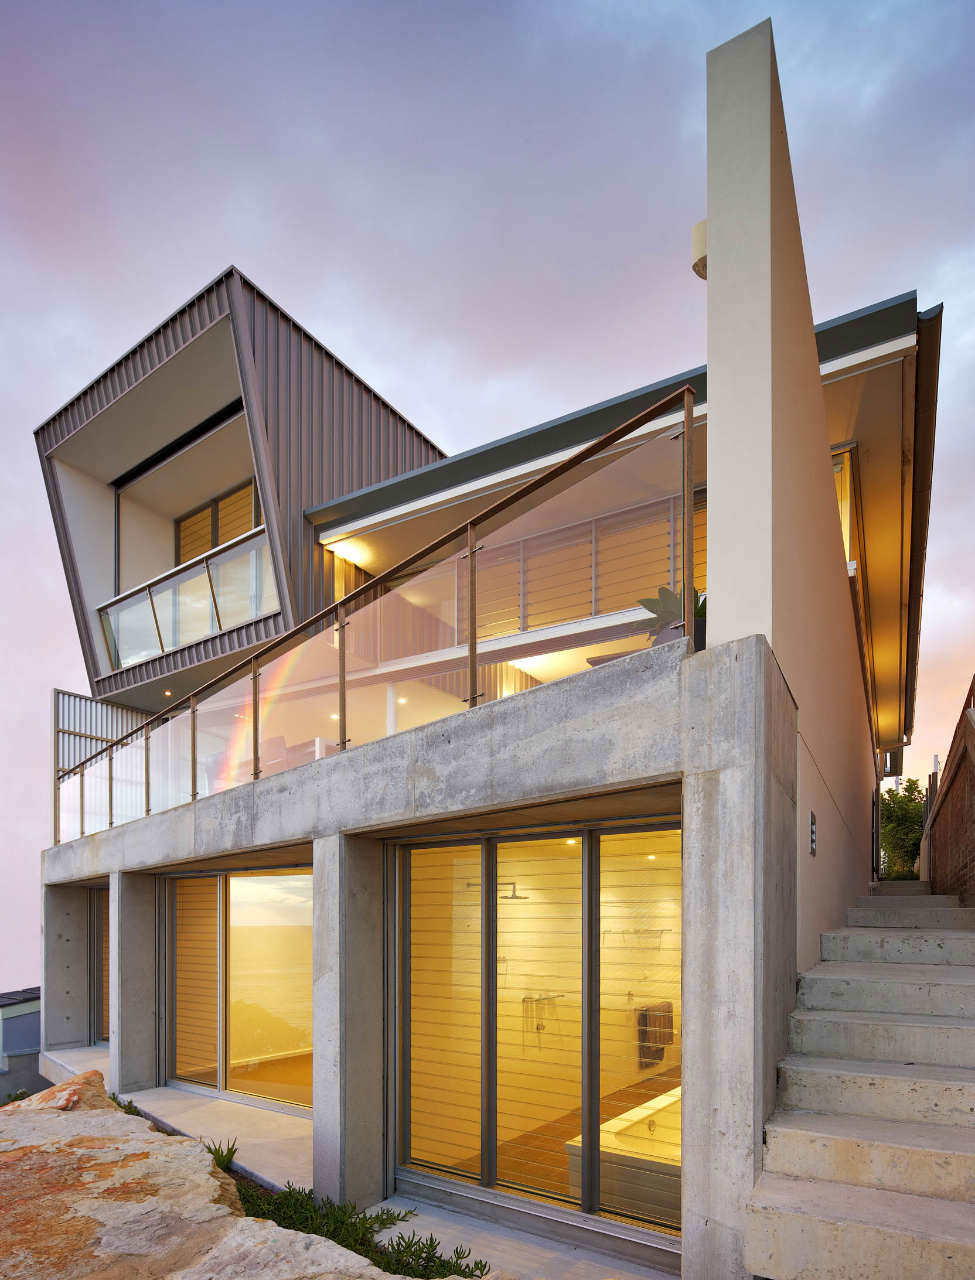 Queenscliff-House-by-Utz-Sanby-Architects australisk arkitektur och några vackra hus för att inspirera dig